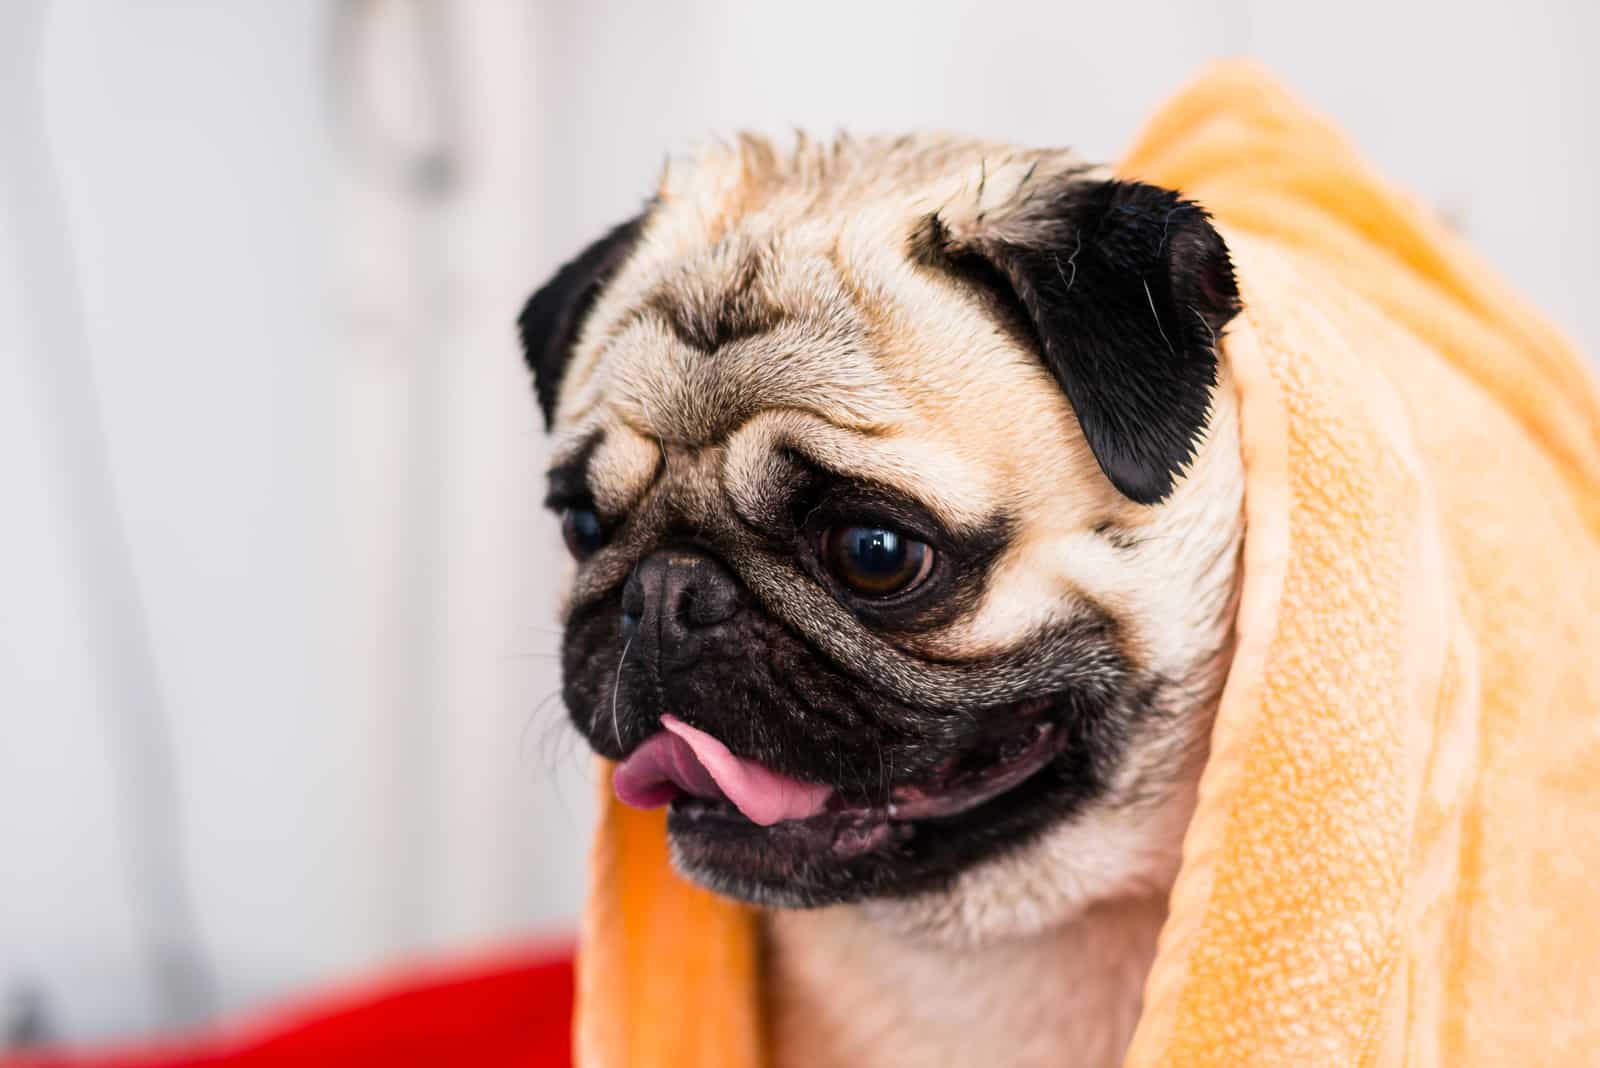 pug dog breed after bath